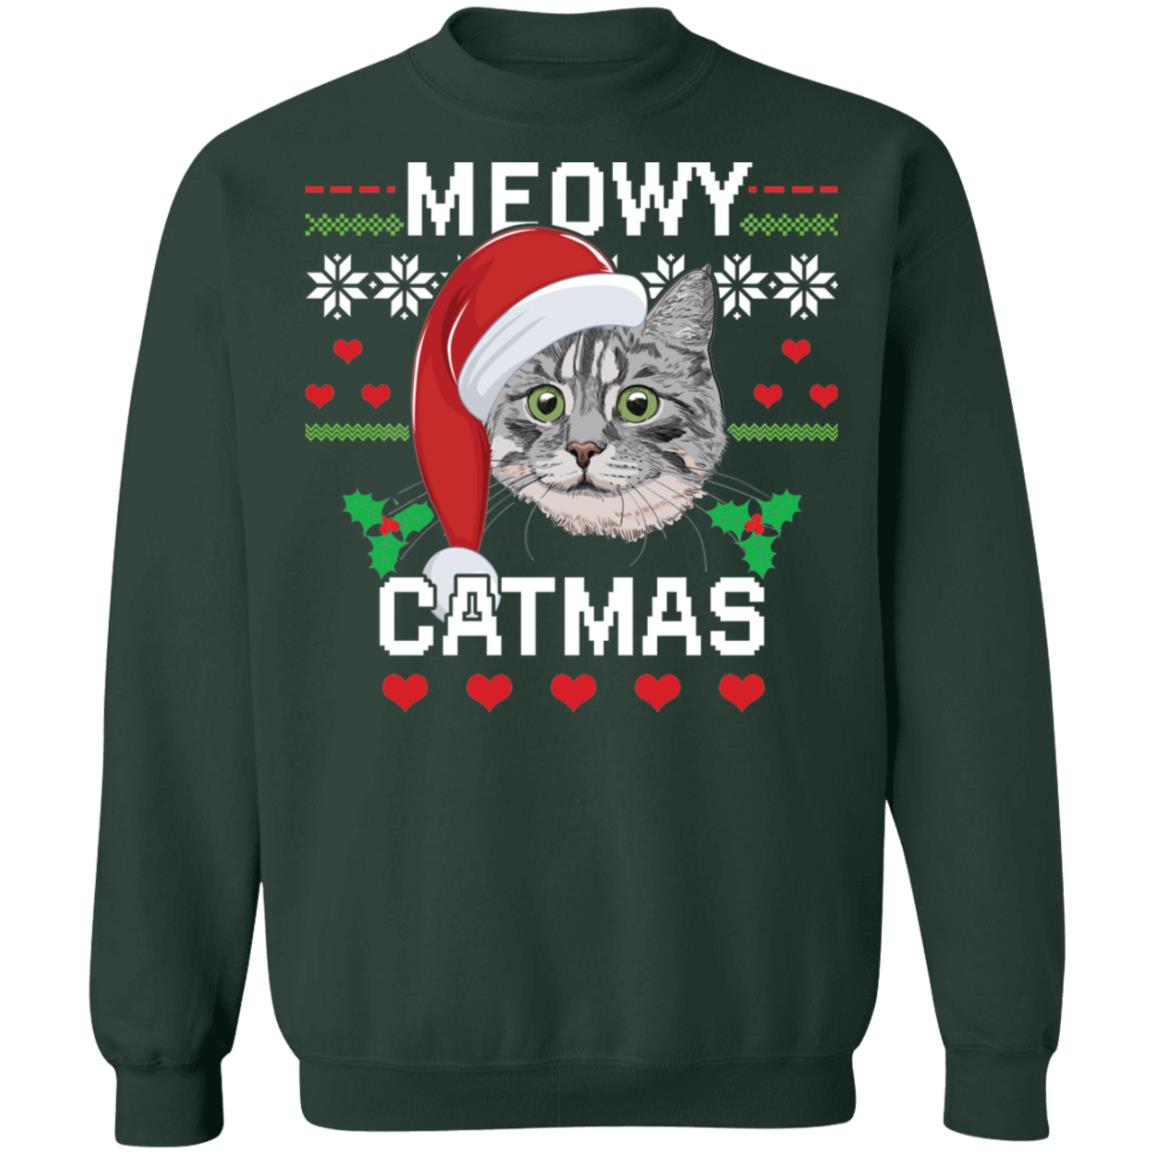 Meowy Catmas Christmas sweatshirt - Rockatee